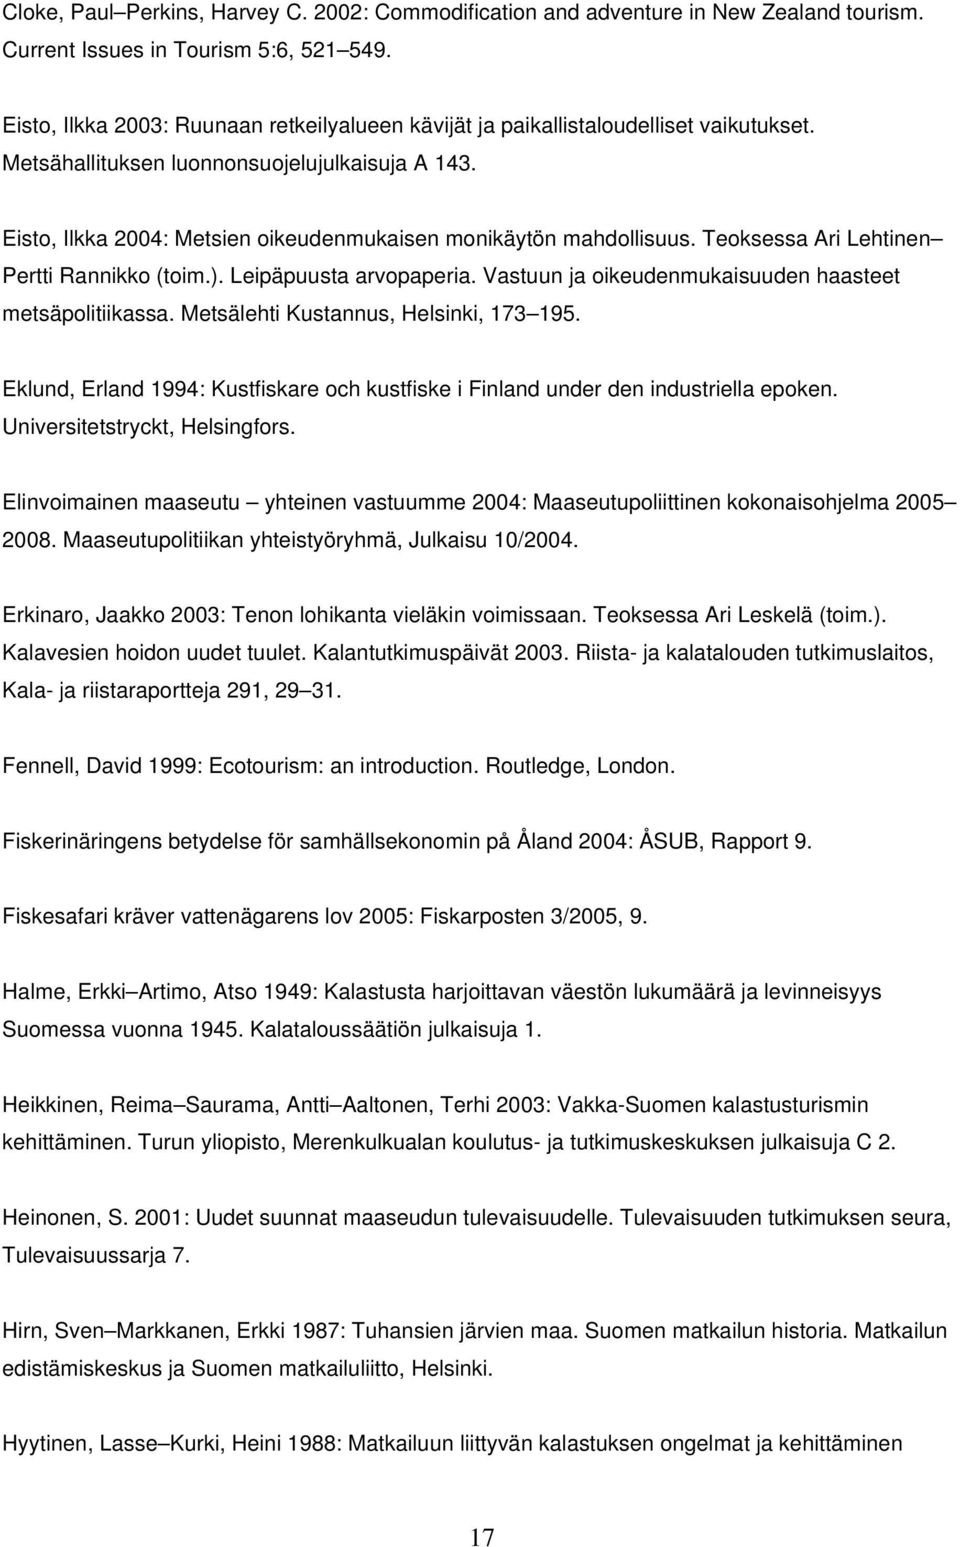 Eisto, Ilkka 2004: Metsien oikeudenmukaisen monikäytön mahdollisuus. Teoksessa Ari Lehtinen Pertti Rannikko (toim.). Leipäpuusta arvopaperia. Vastuun ja oikeudenmukaisuuden haasteet metsäpolitiikassa.